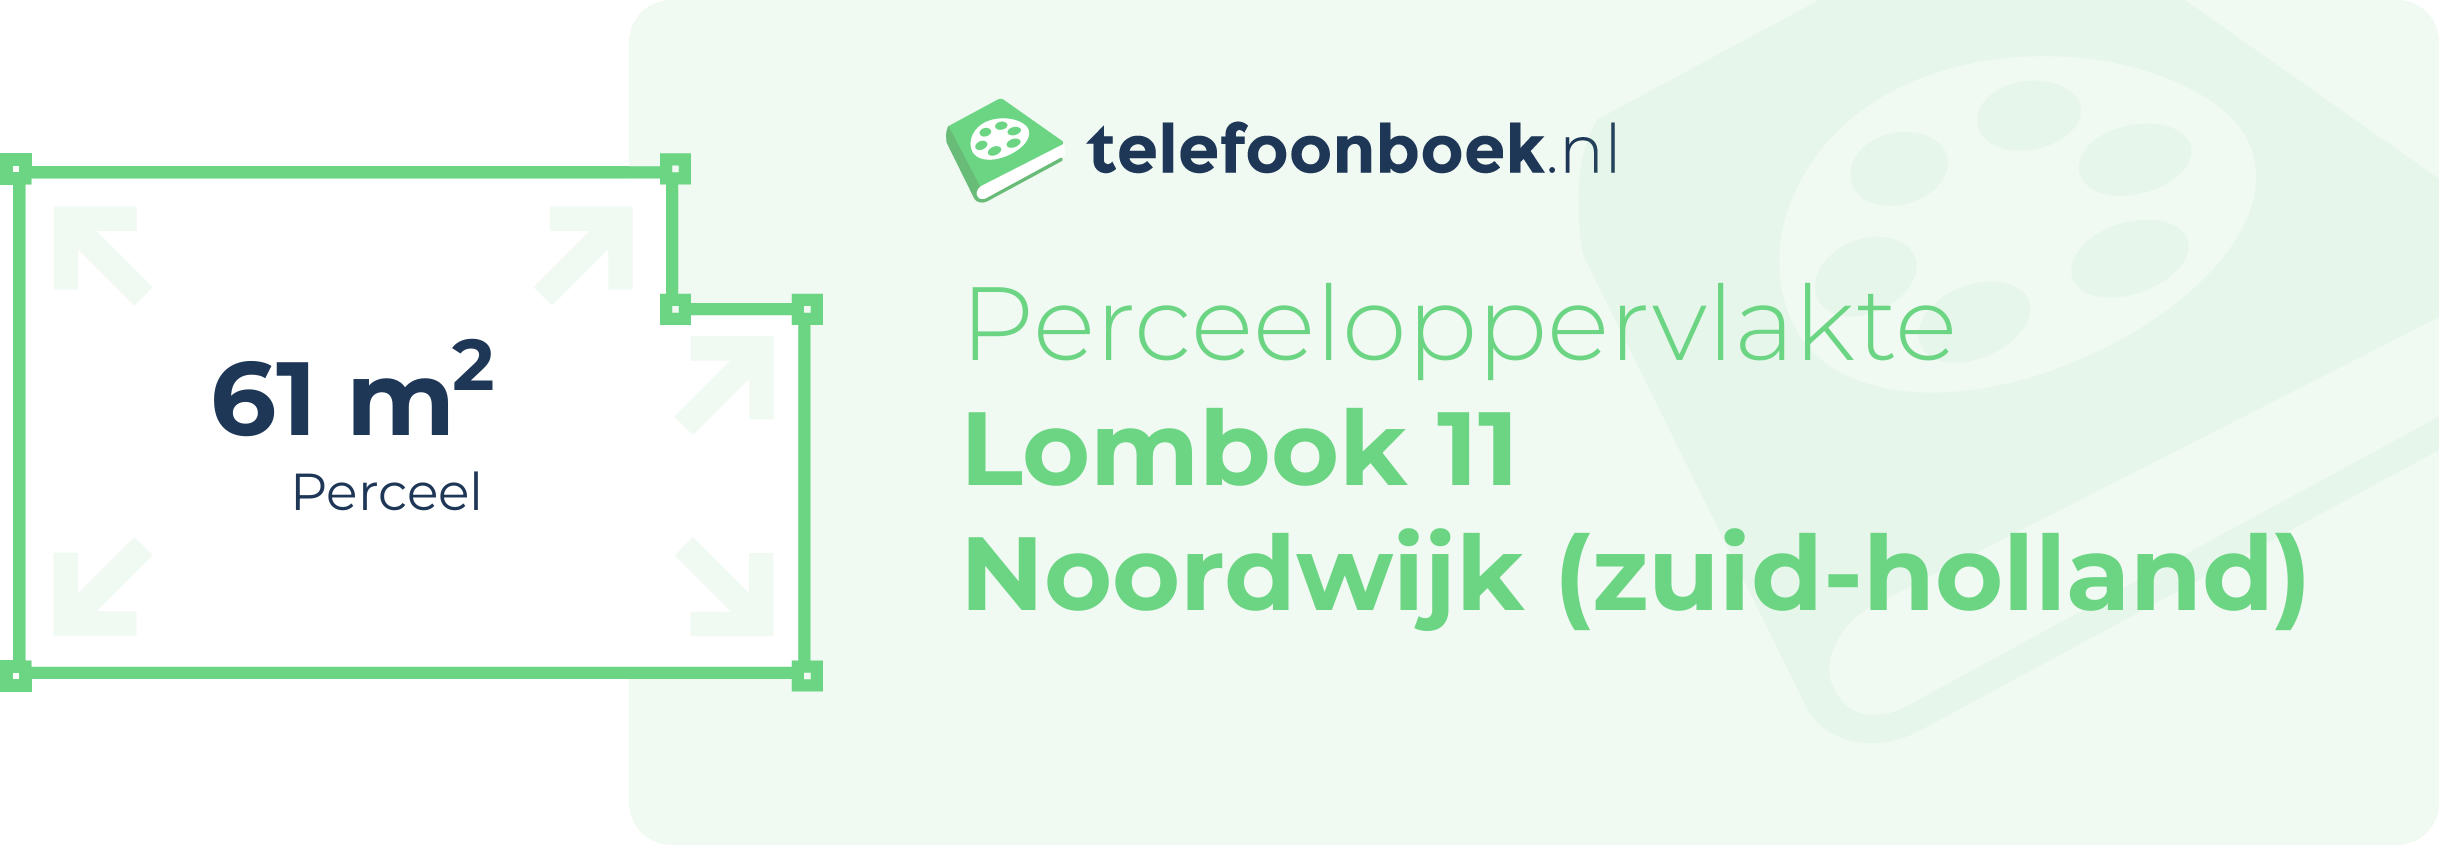 Perceeloppervlakte Lombok 11 Noordwijk (Zuid-Holland)